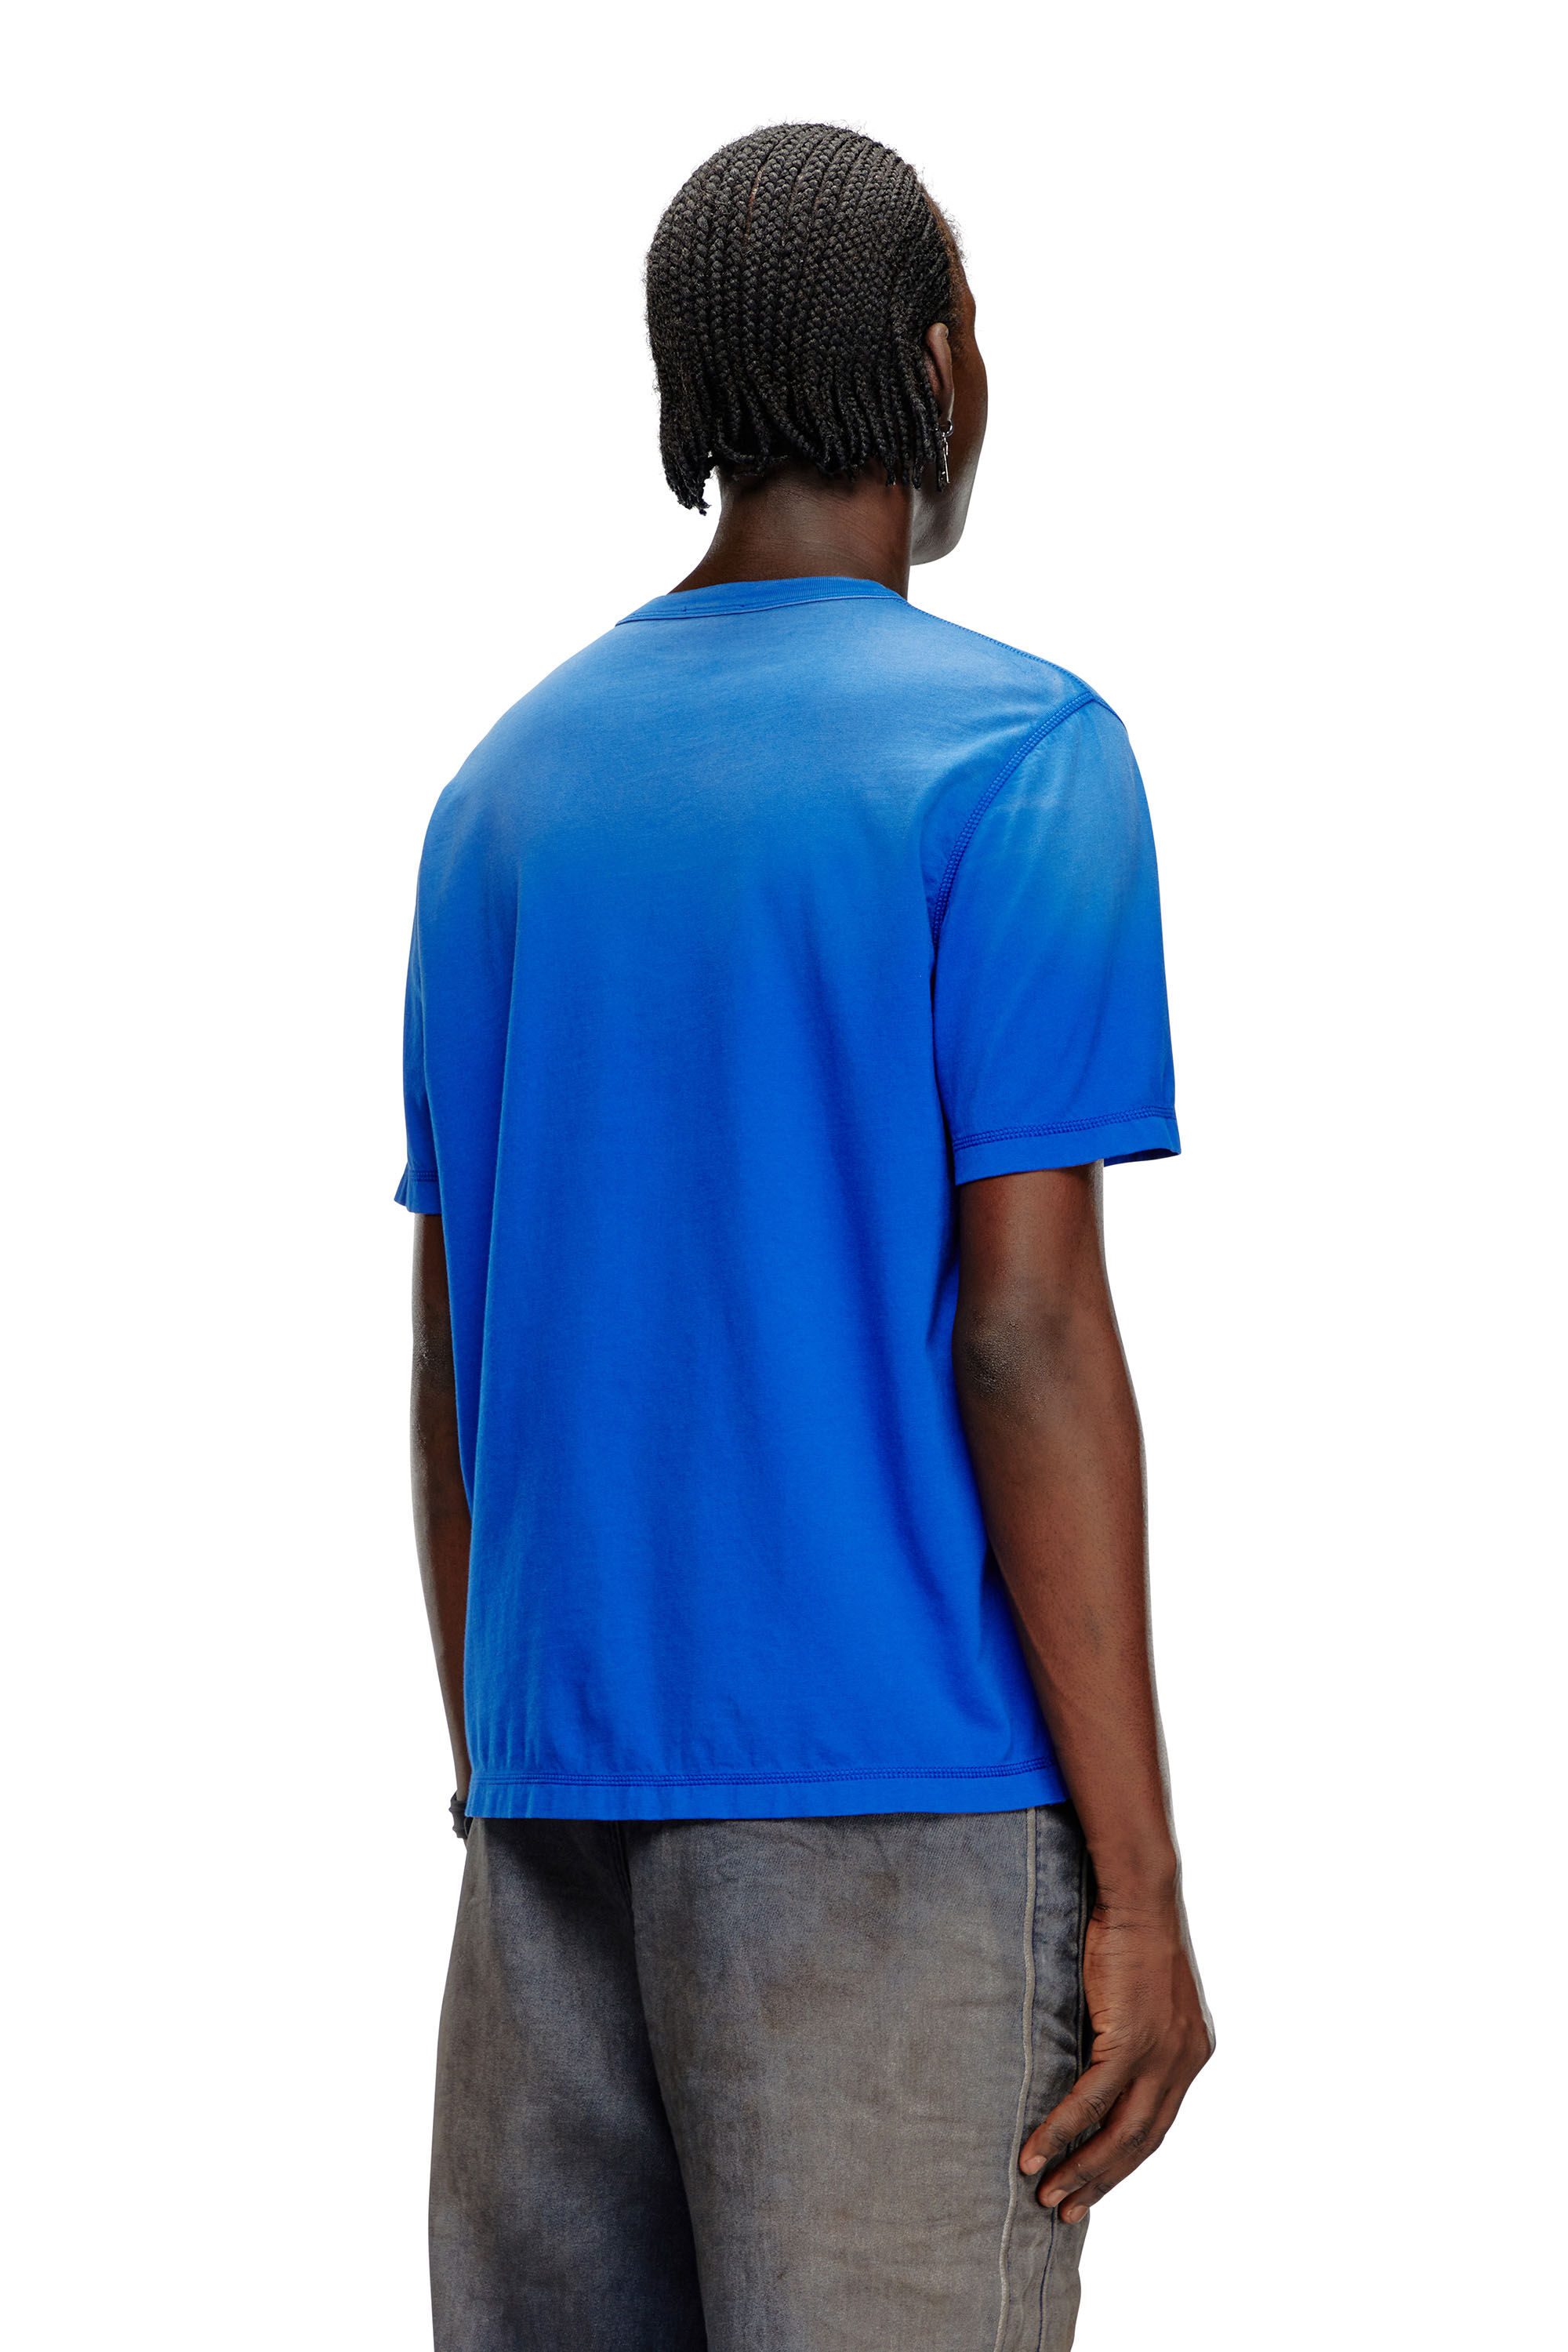 Diesel - T-ADJUST-K4, Hombre Camiseta con tratamiento desteñido por el sol in Azul marino - Image 4